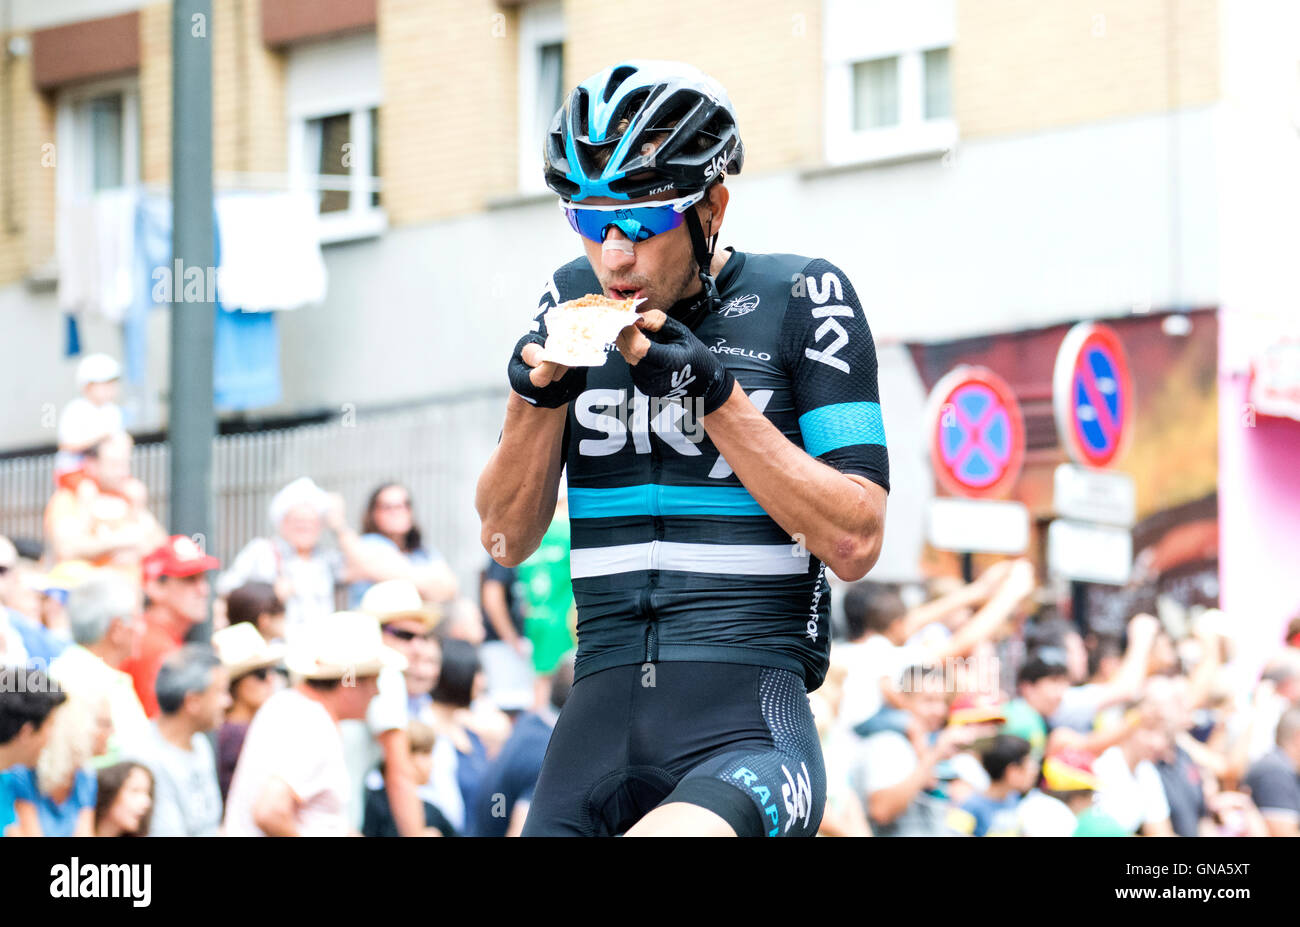 Lugones, España. El 29 de agosto, 2016. David Sky) come el inicio de la 10ª etapa de la carrera ciclista "La Vuelta a España" (Tour de España) Lugones